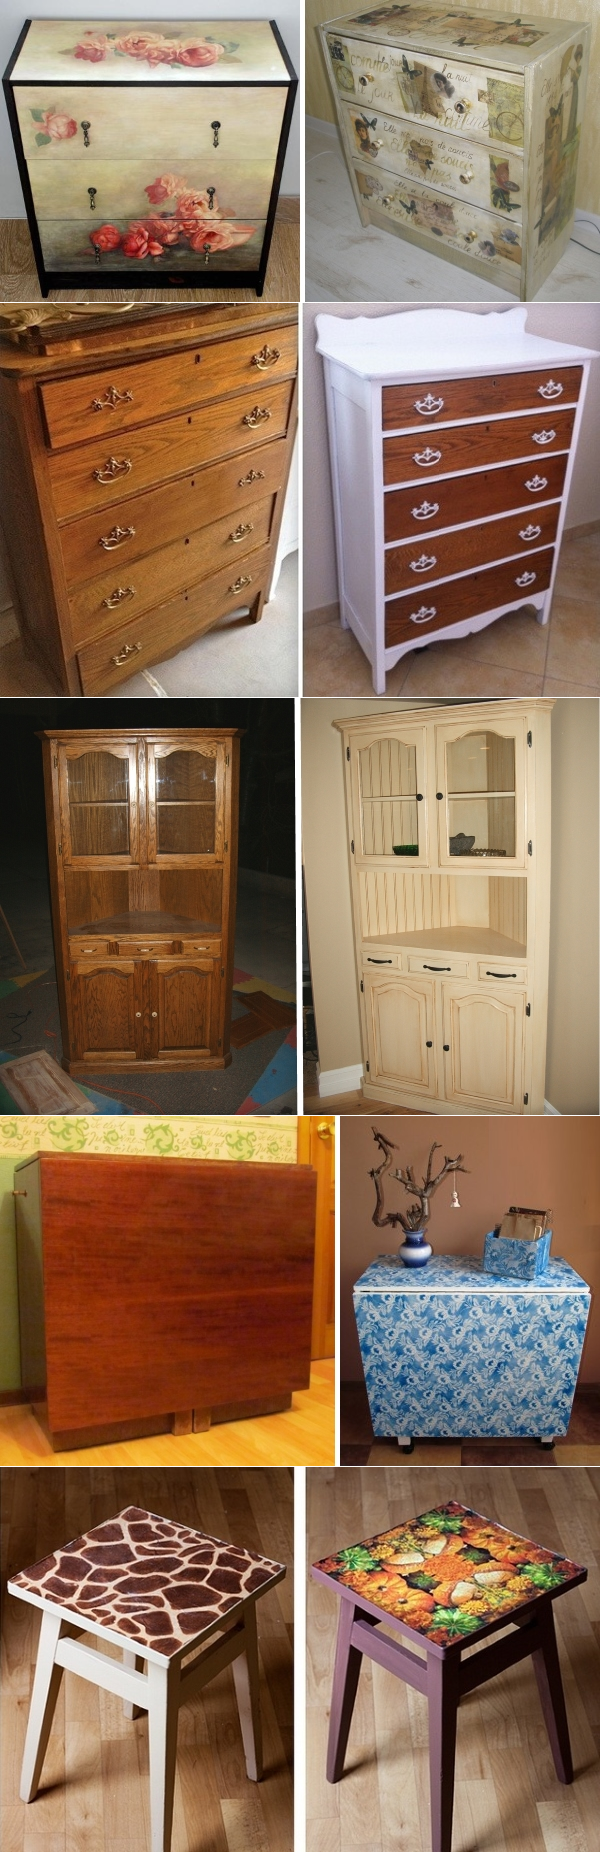 Новая жизнь старой мебели - обзор лучших идей. 85 фото до и после!